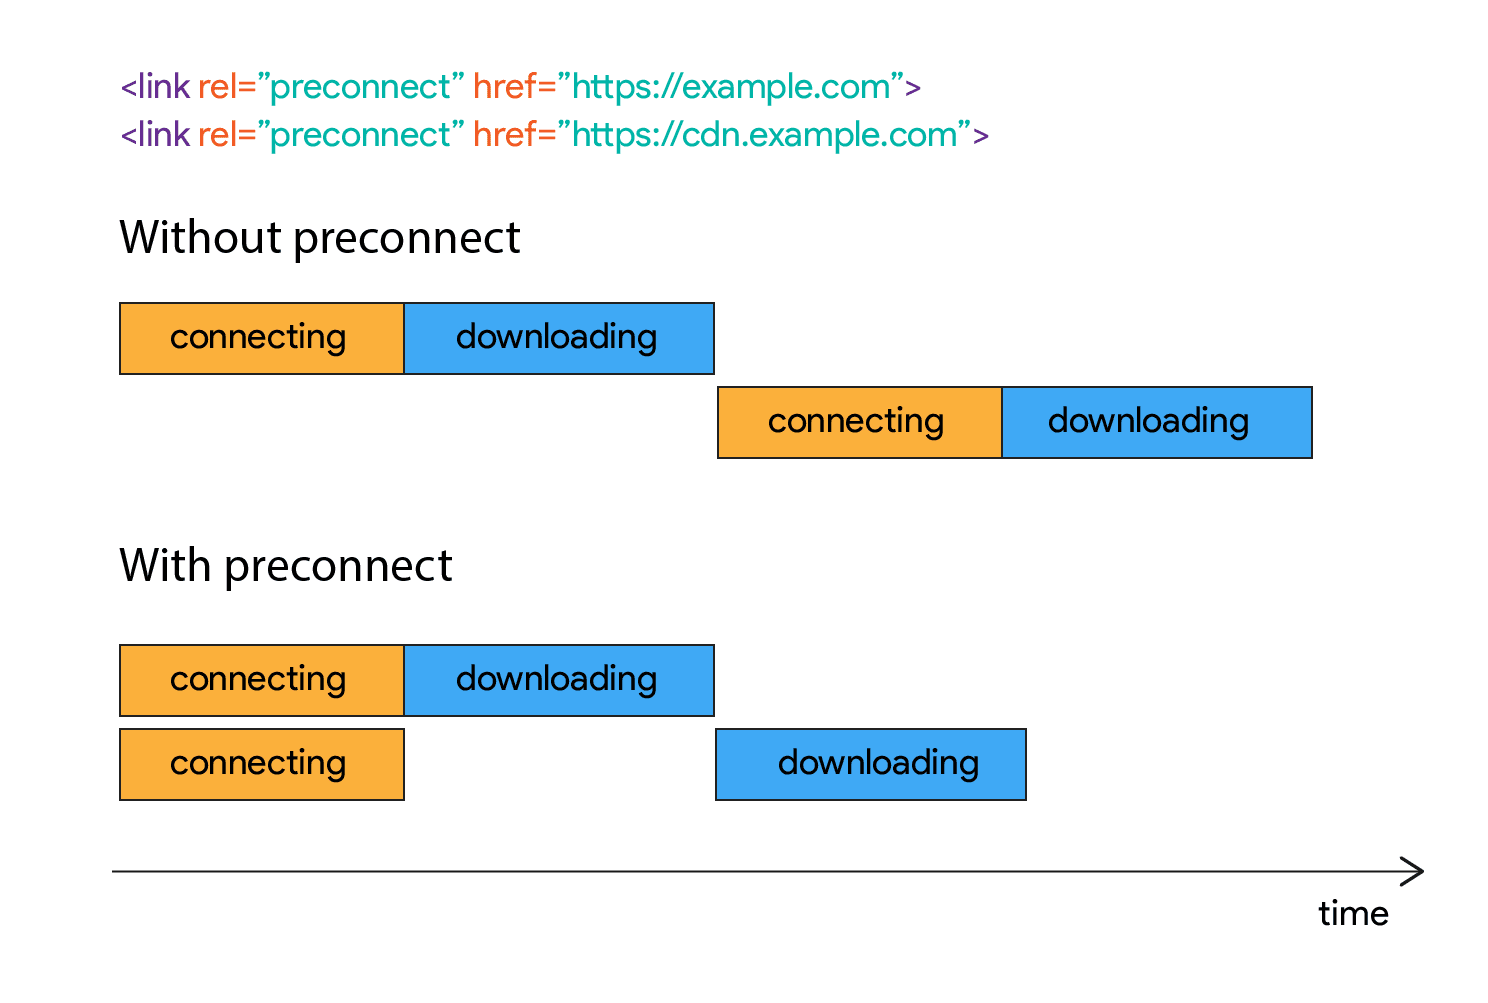 इस डायग्राम में दिखाया गया है कि कनेक्ट होने के बाद कुछ समय तक डाउनलोड कैसे शुरू नहीं होता.